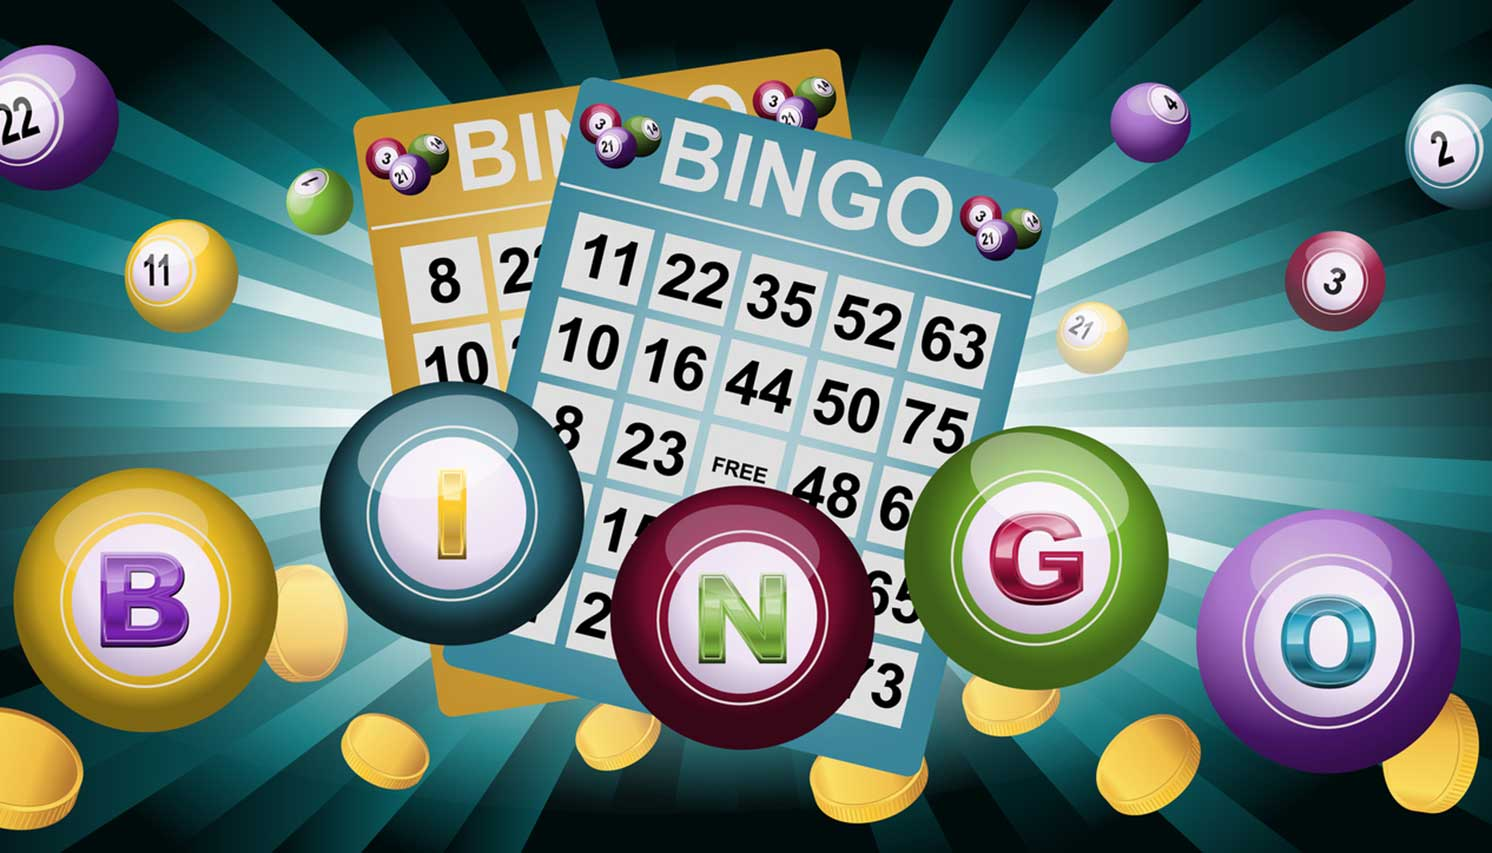 Cách chơi Bingo đơn giản chỉ với vài bước